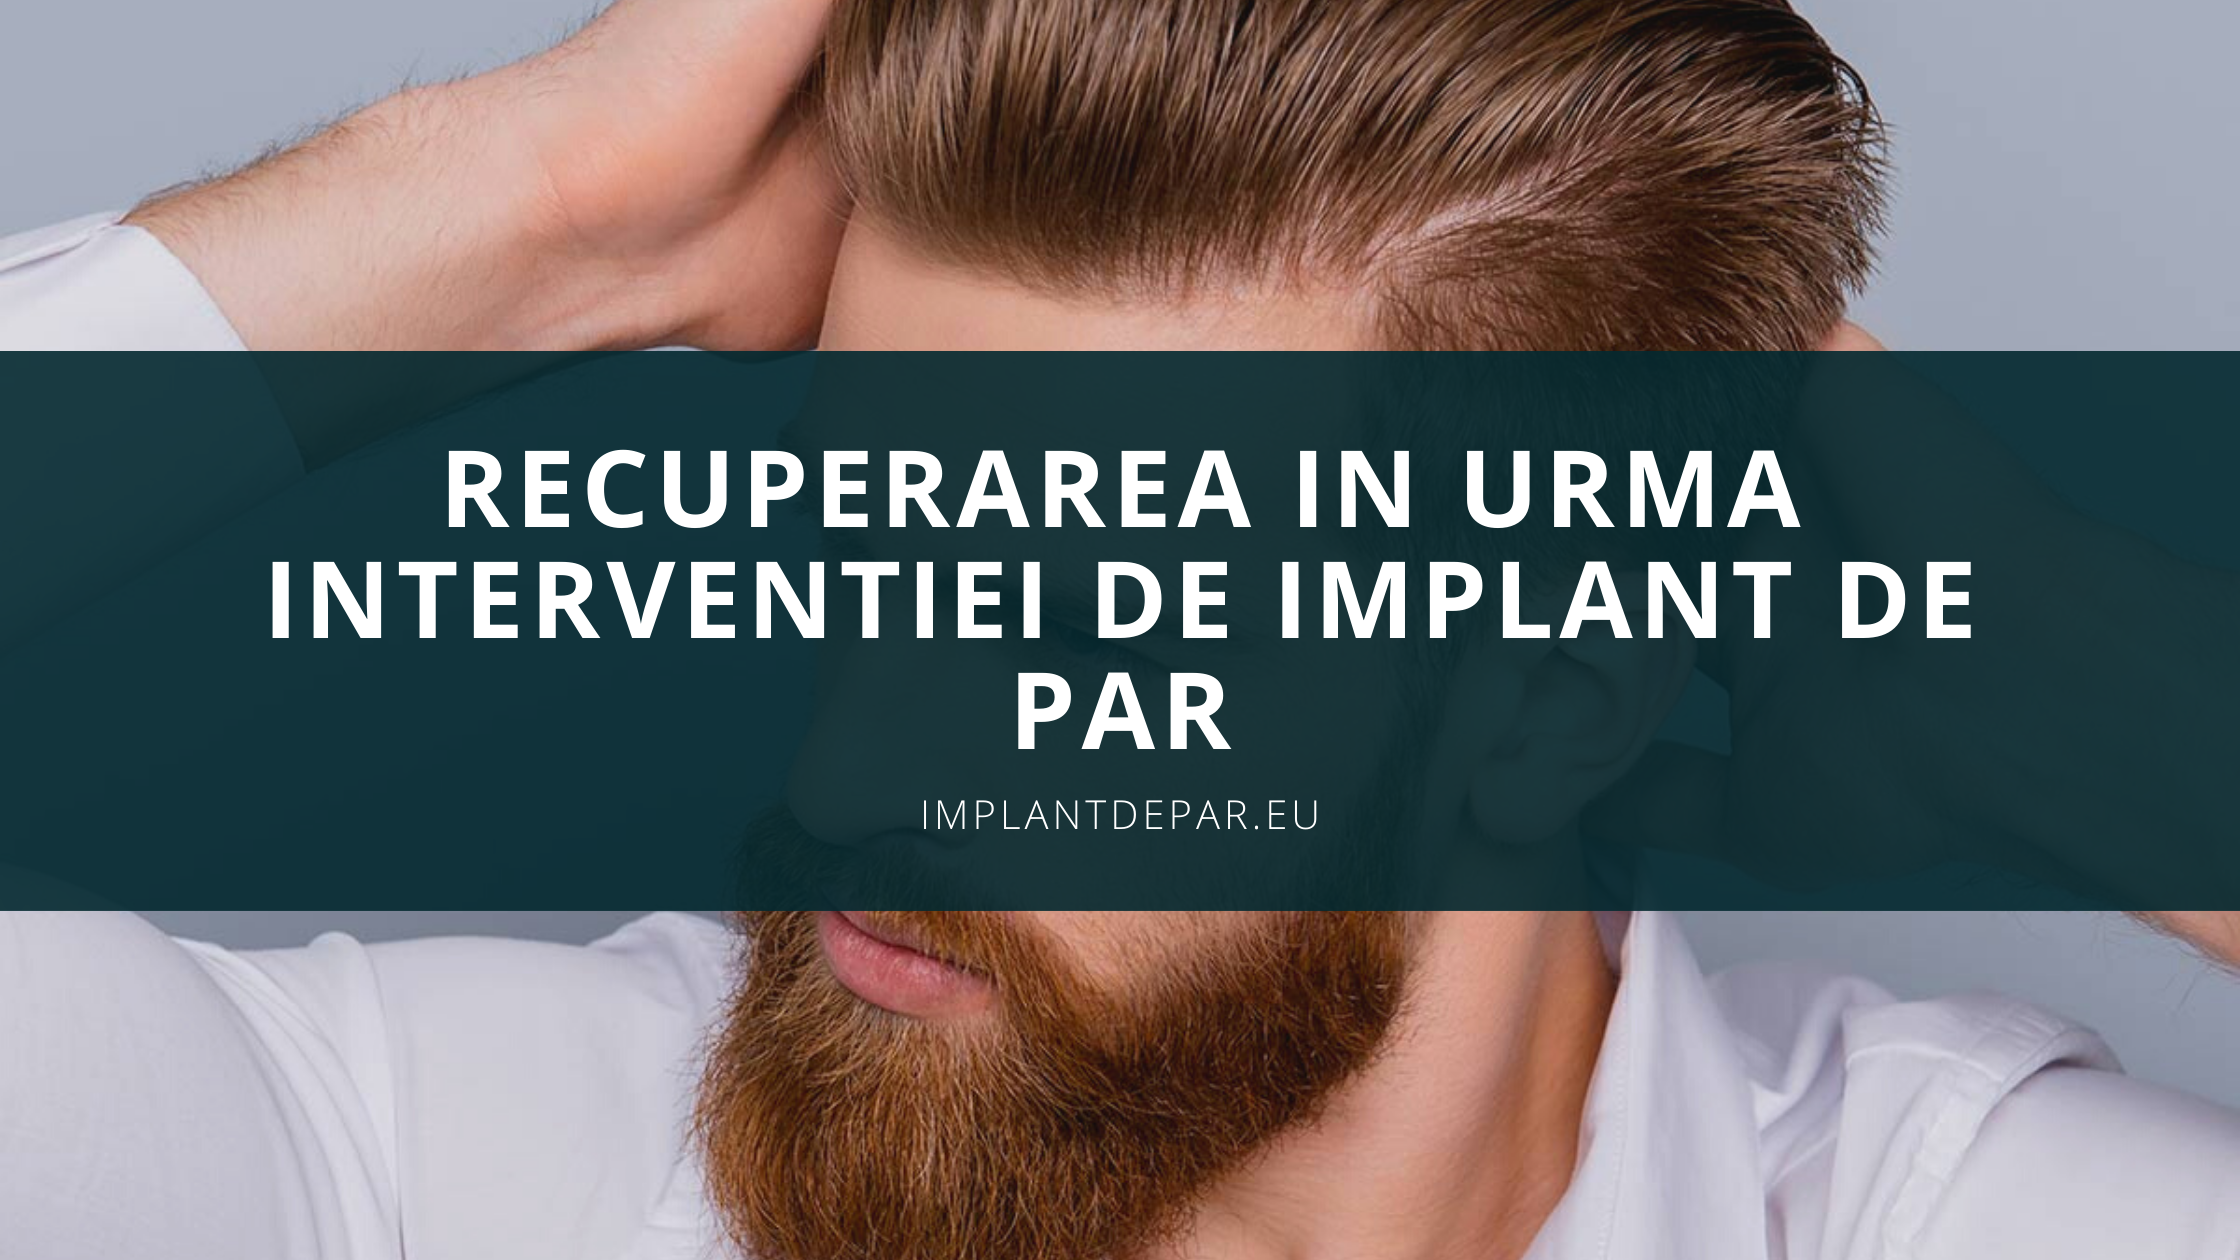 Recuperarea in urma interventiei de implant par